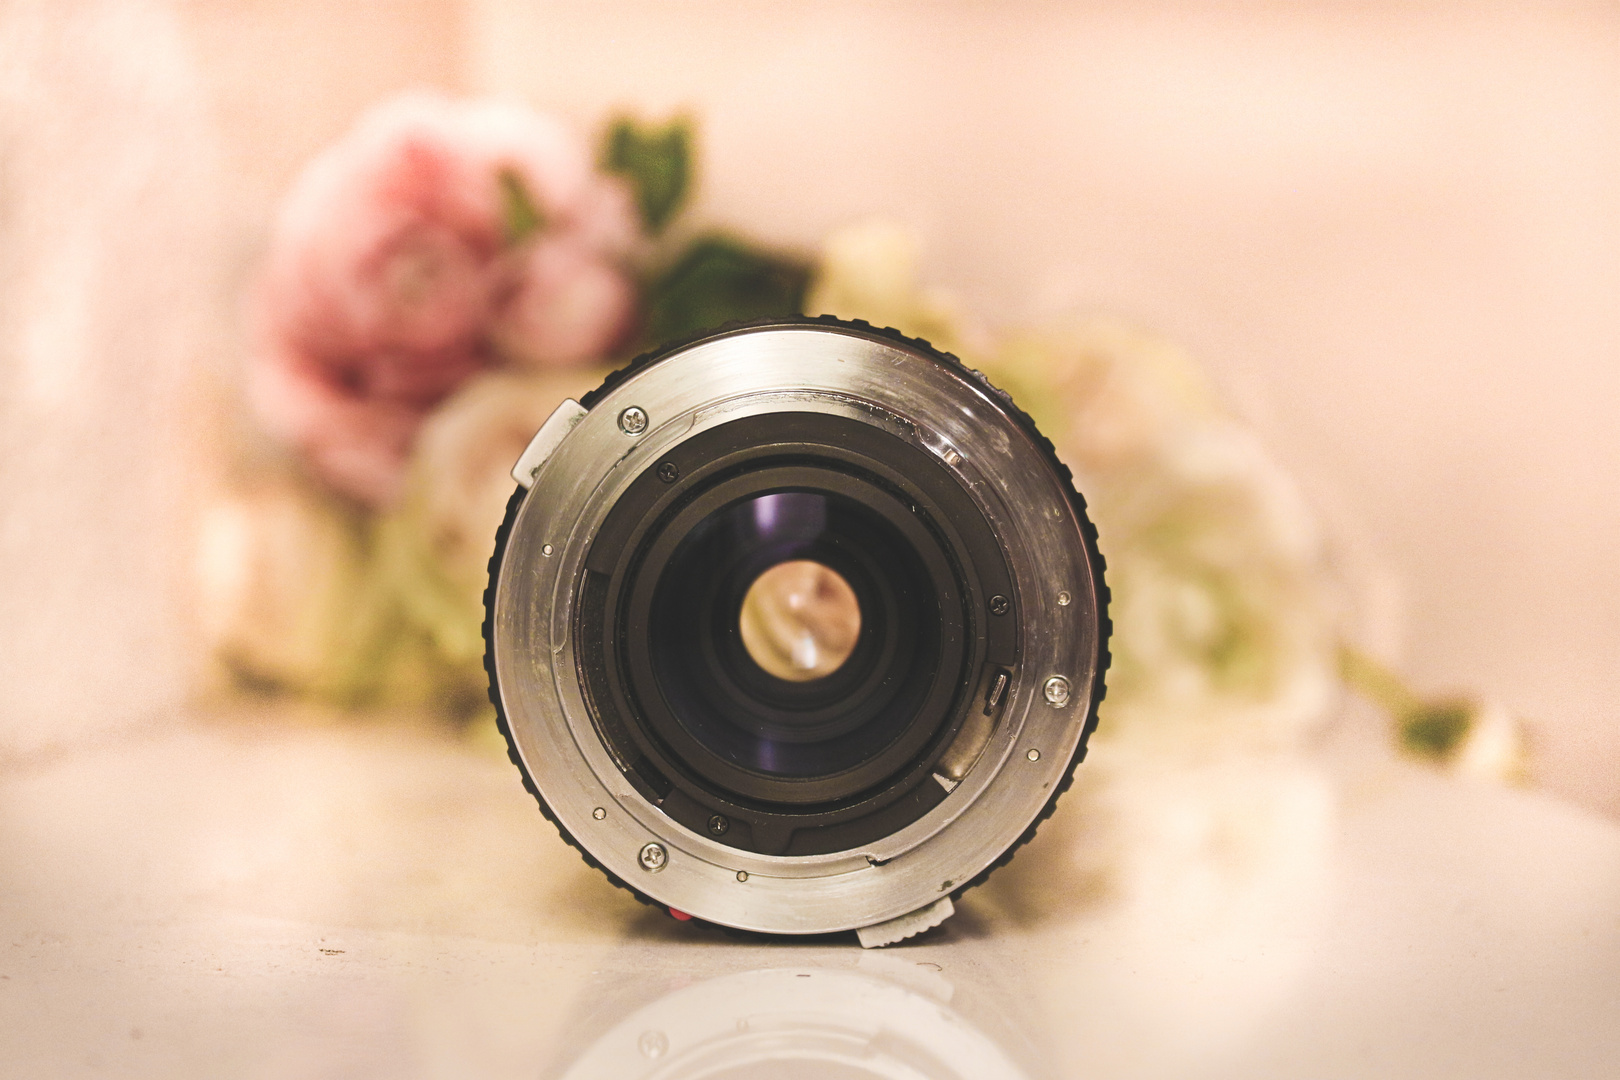 Flower lens